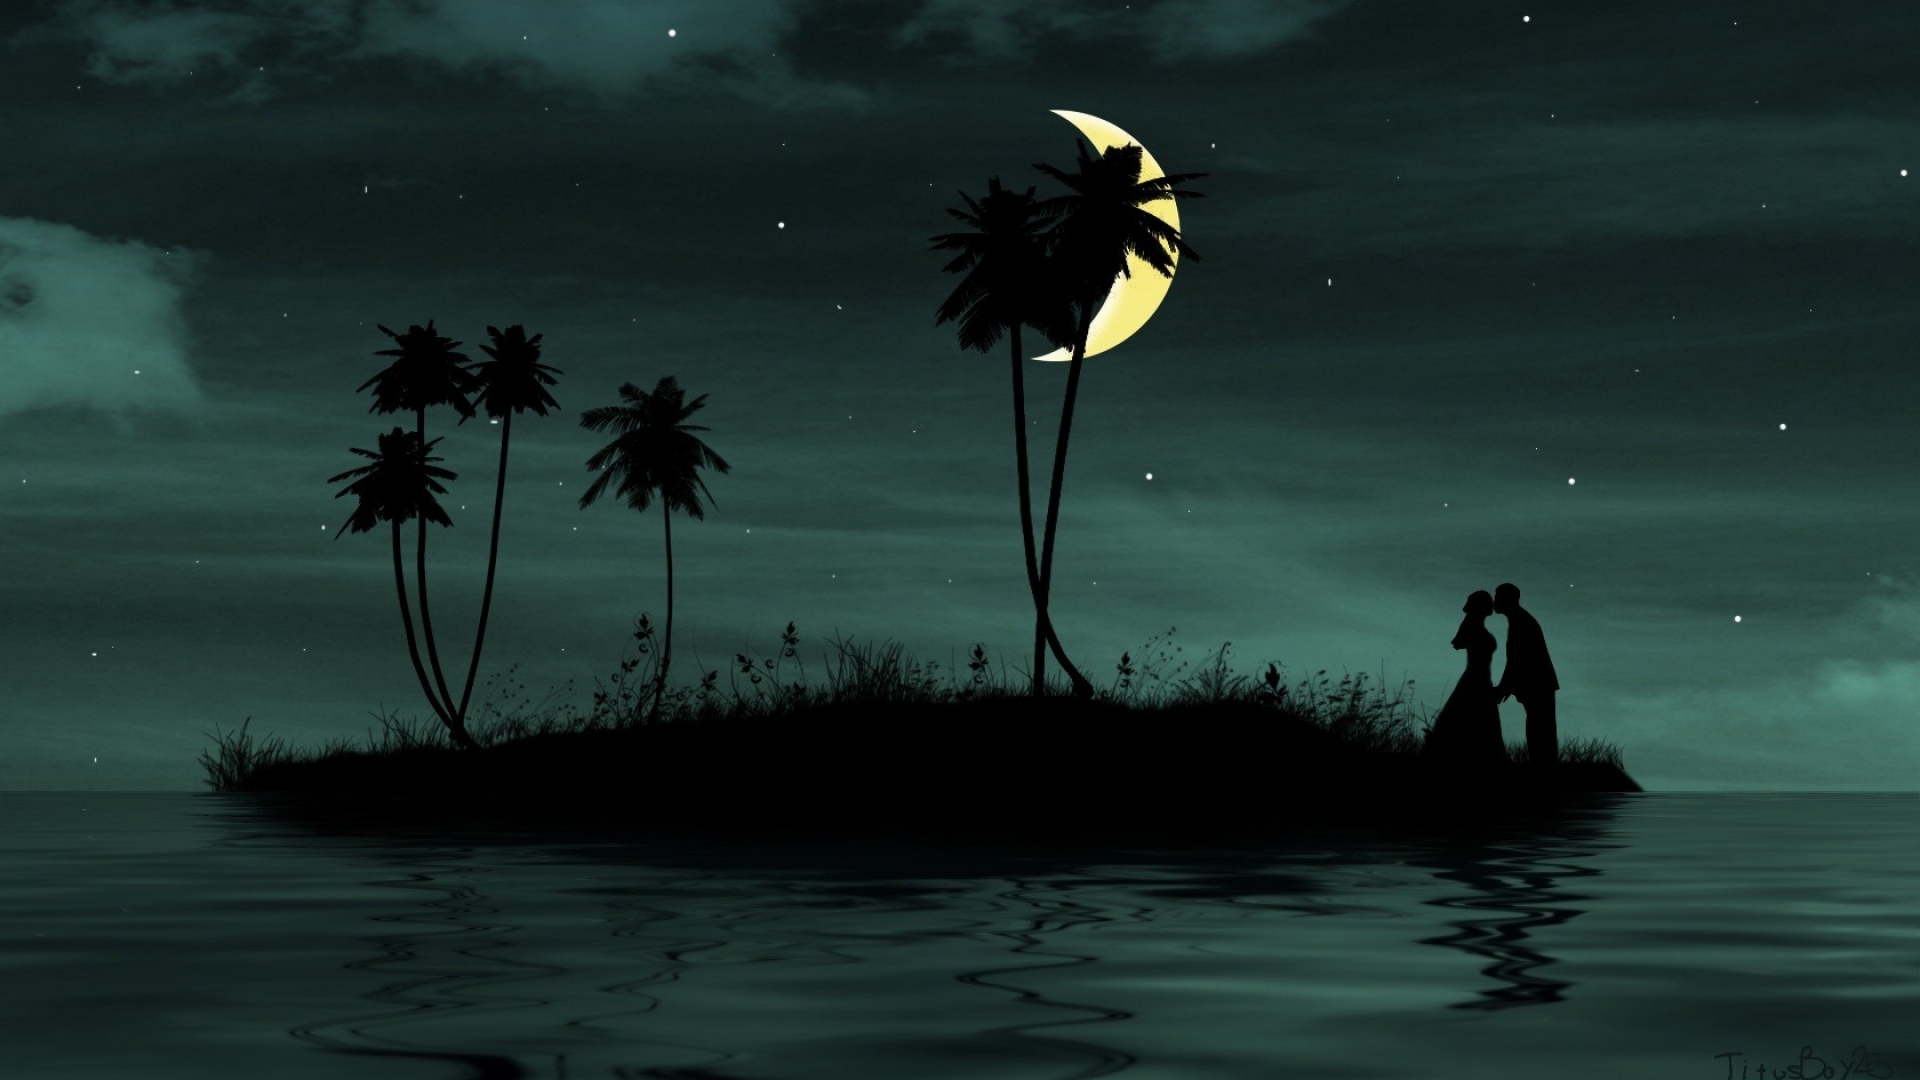 romantic wallpaper hd 1080p free download,sky,moonlight,tree,ocean,illustration